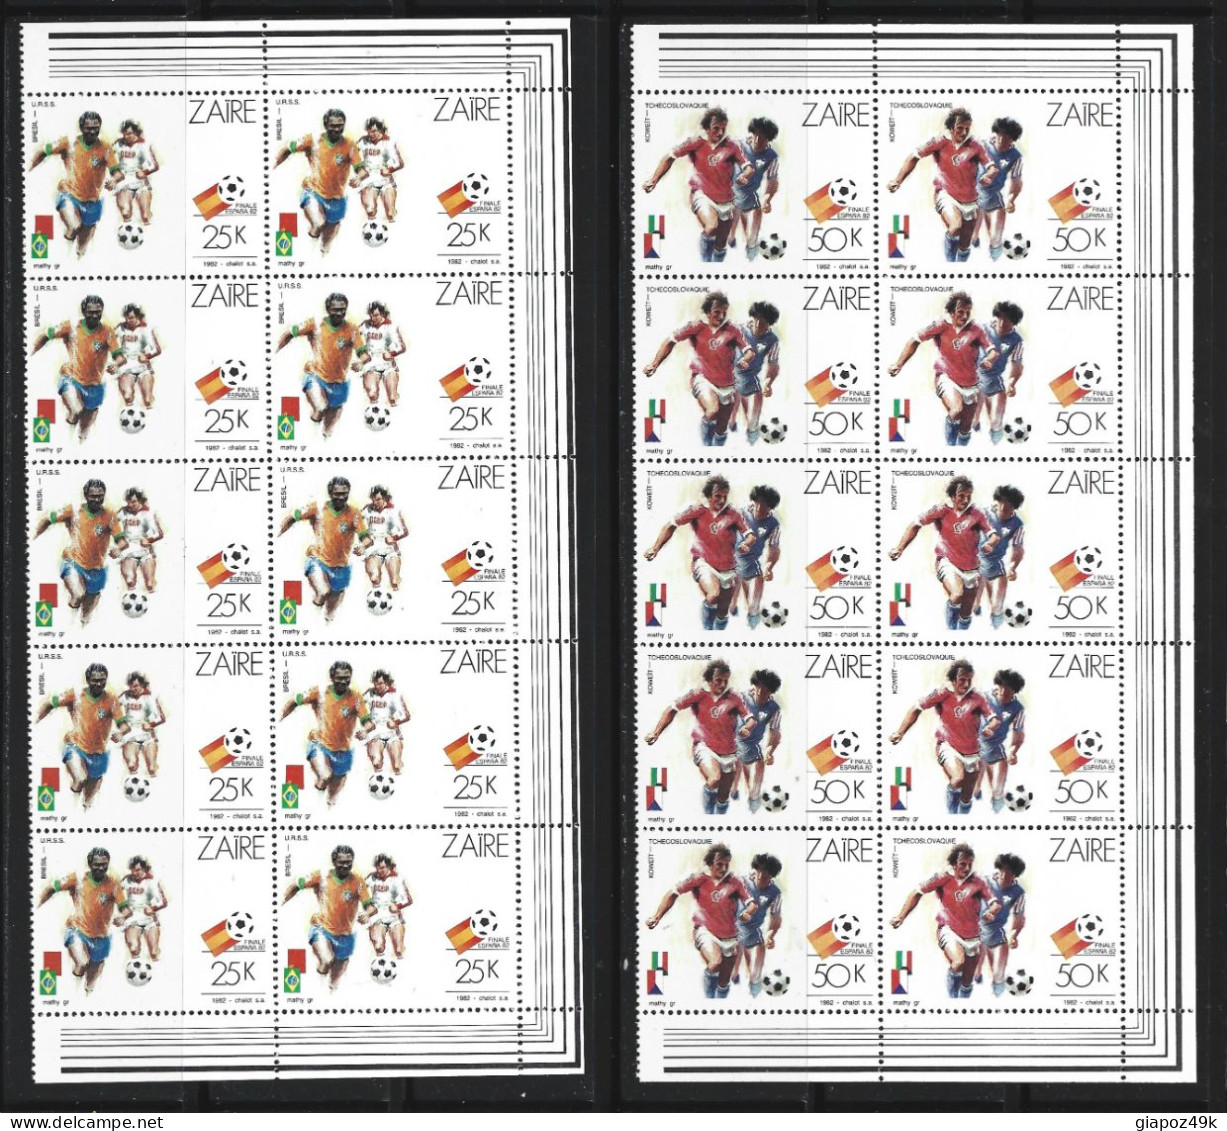 ● ZAIRE 1982 ֍ Calcio Espana '82 ● Soccer ● Blocco Di 10 ● Serie Completa ● Cat. 130,00 € ●Lotto N. XXX ● - Unused Stamps